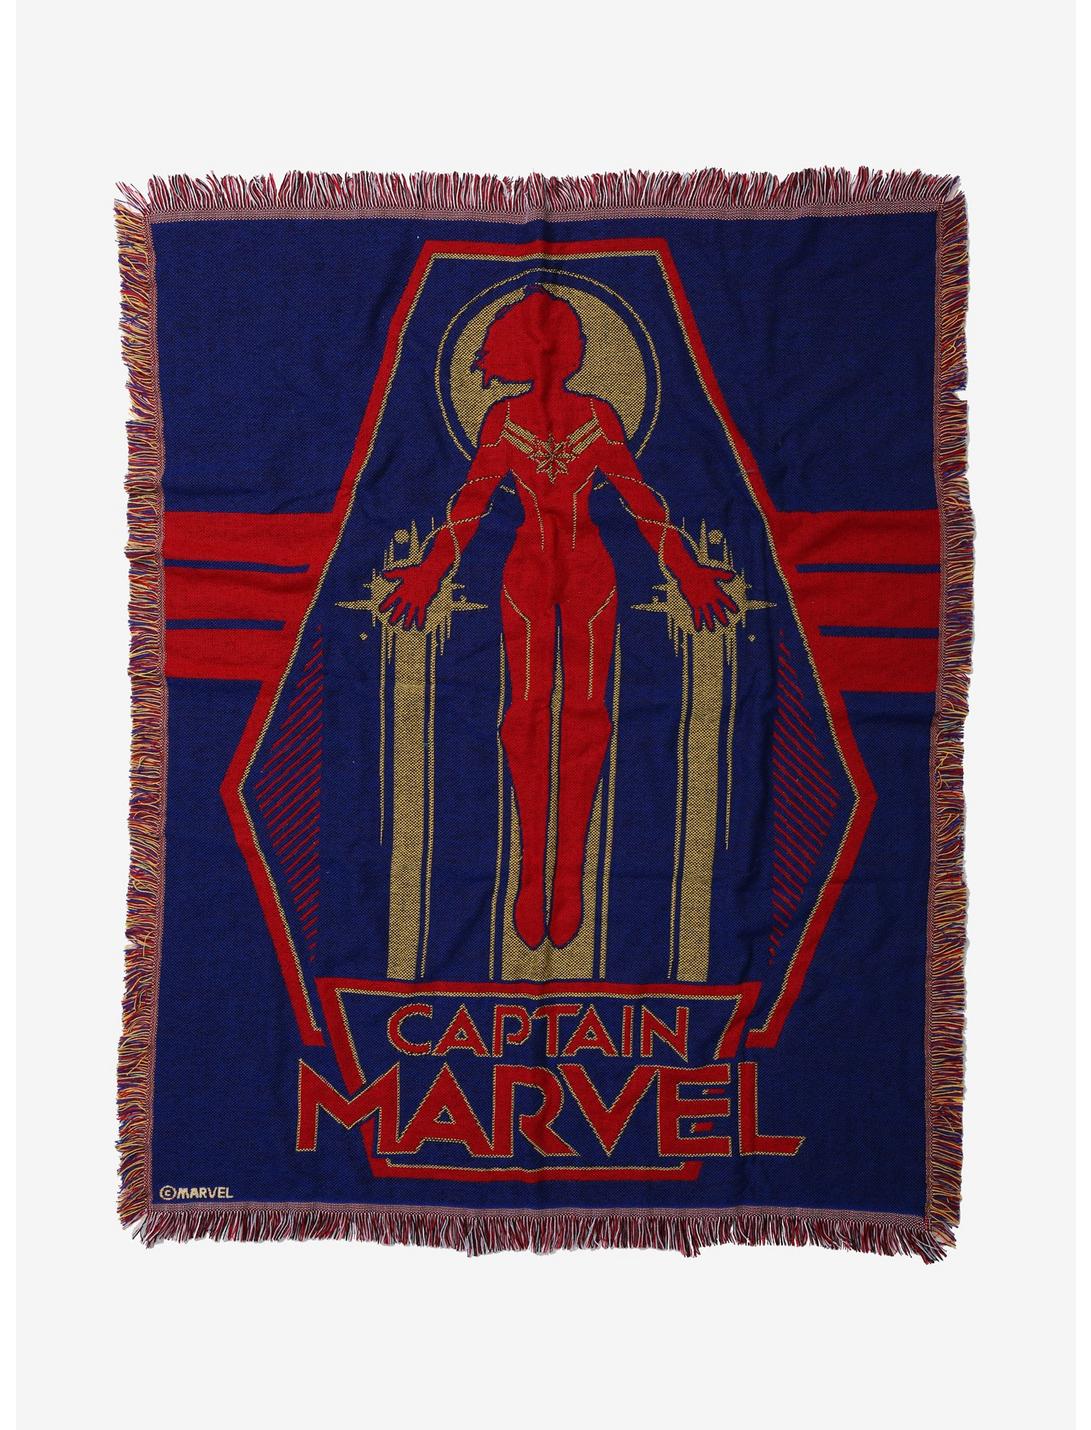 Marvel Captain Marvel Silhouette Tapestry Throw Blanket, , hi-res